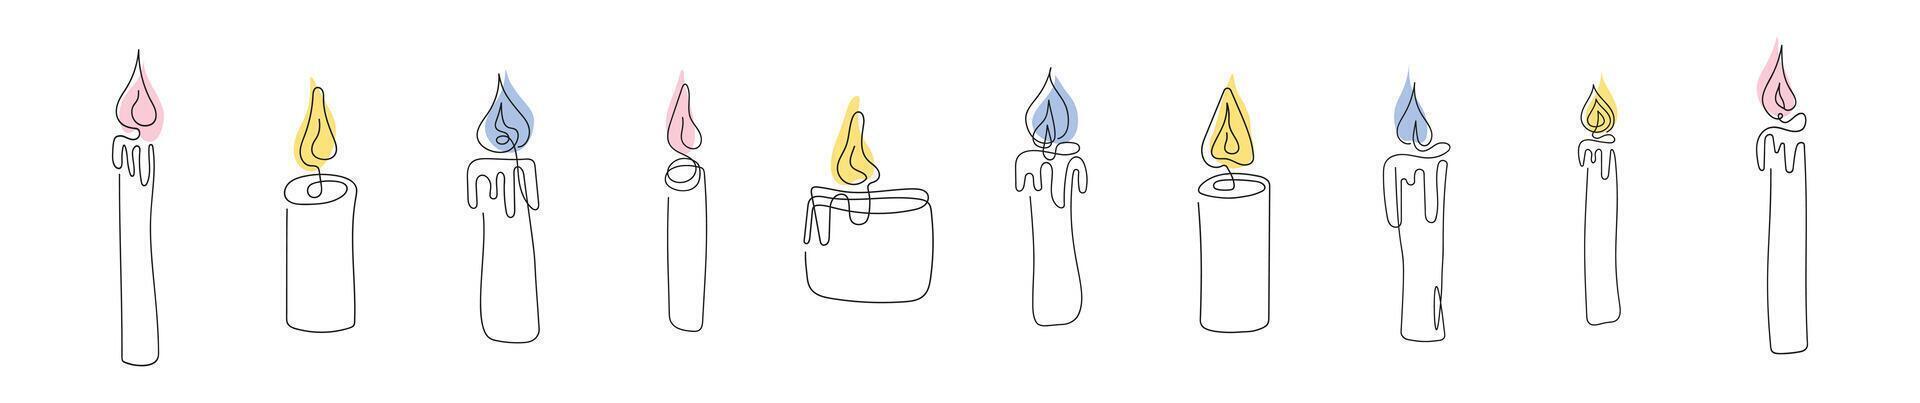 conjunto de vistoso cera velas con llamas ardiente decorativo aroma velas continuo uno línea dibujo. línea Arte. aislado en blanco fondo. diseño elementos para imprimir, saludo, tarjeta postal vector